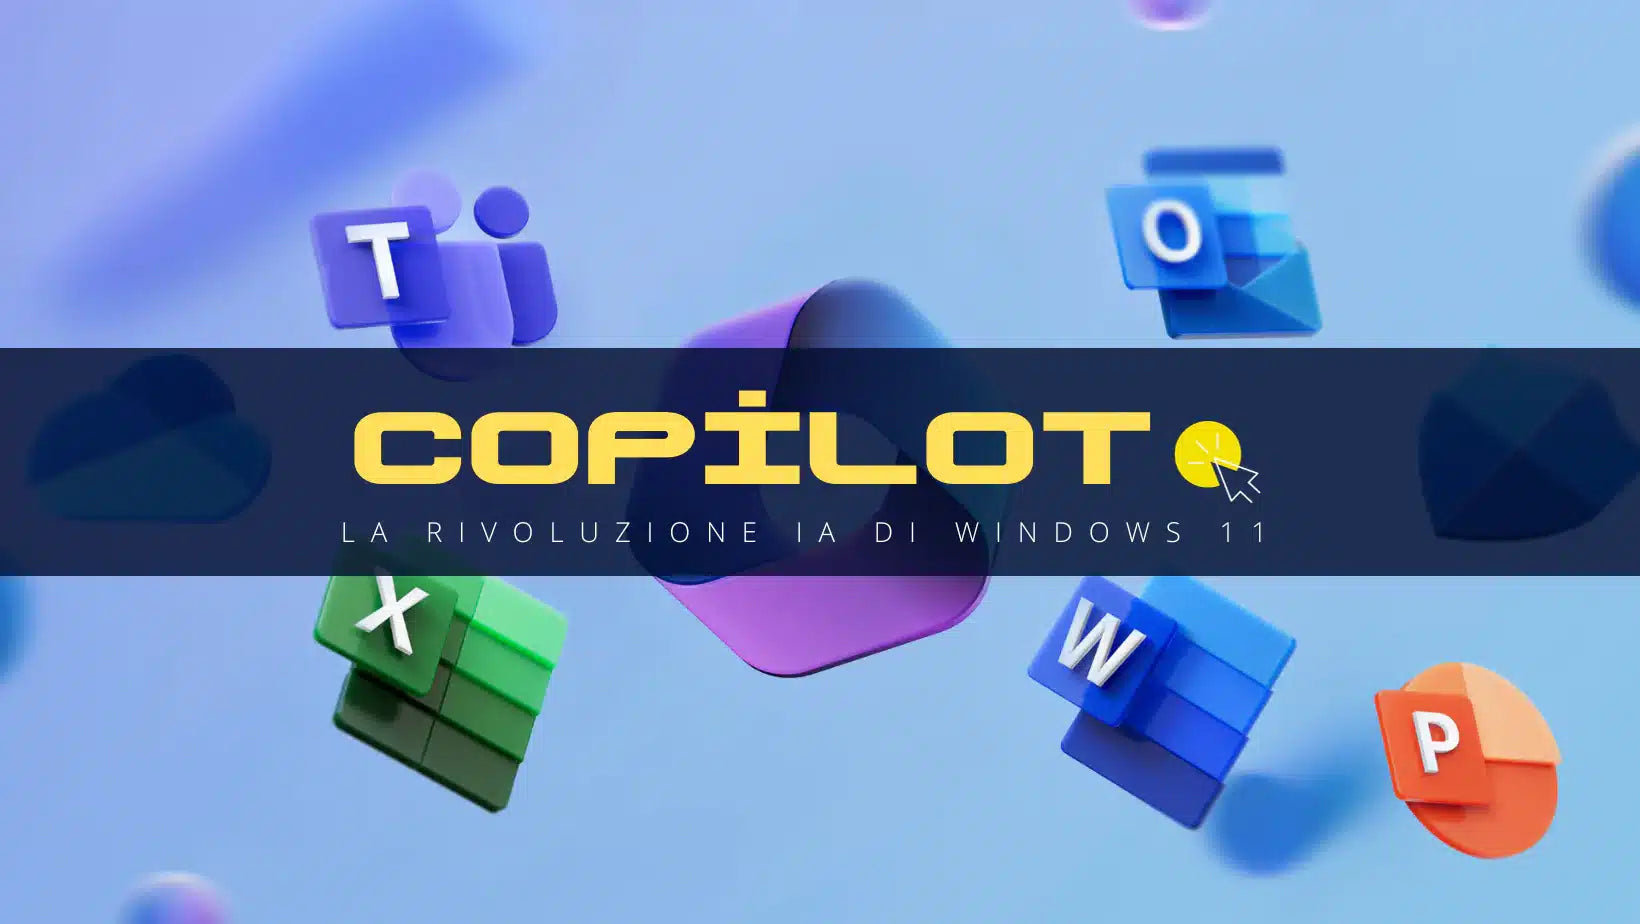 Cos'è CoPilot? La Rivoluzione IA di Windows 11